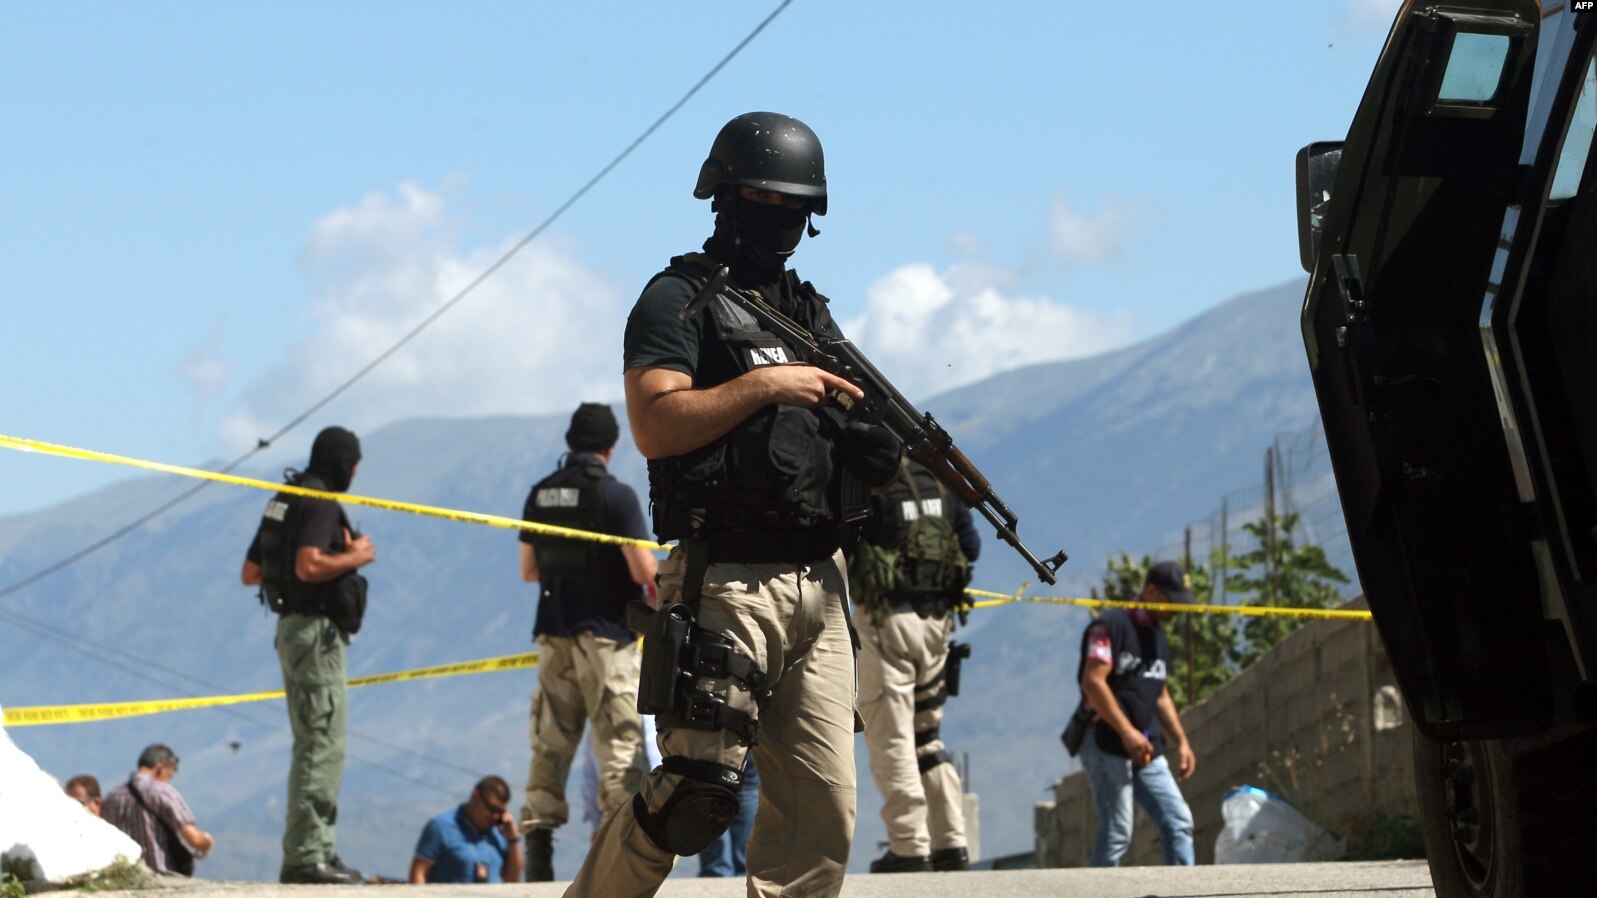 Dhjetëra të arrestuar në Shqipëri për trafik droge dhe korrupsion